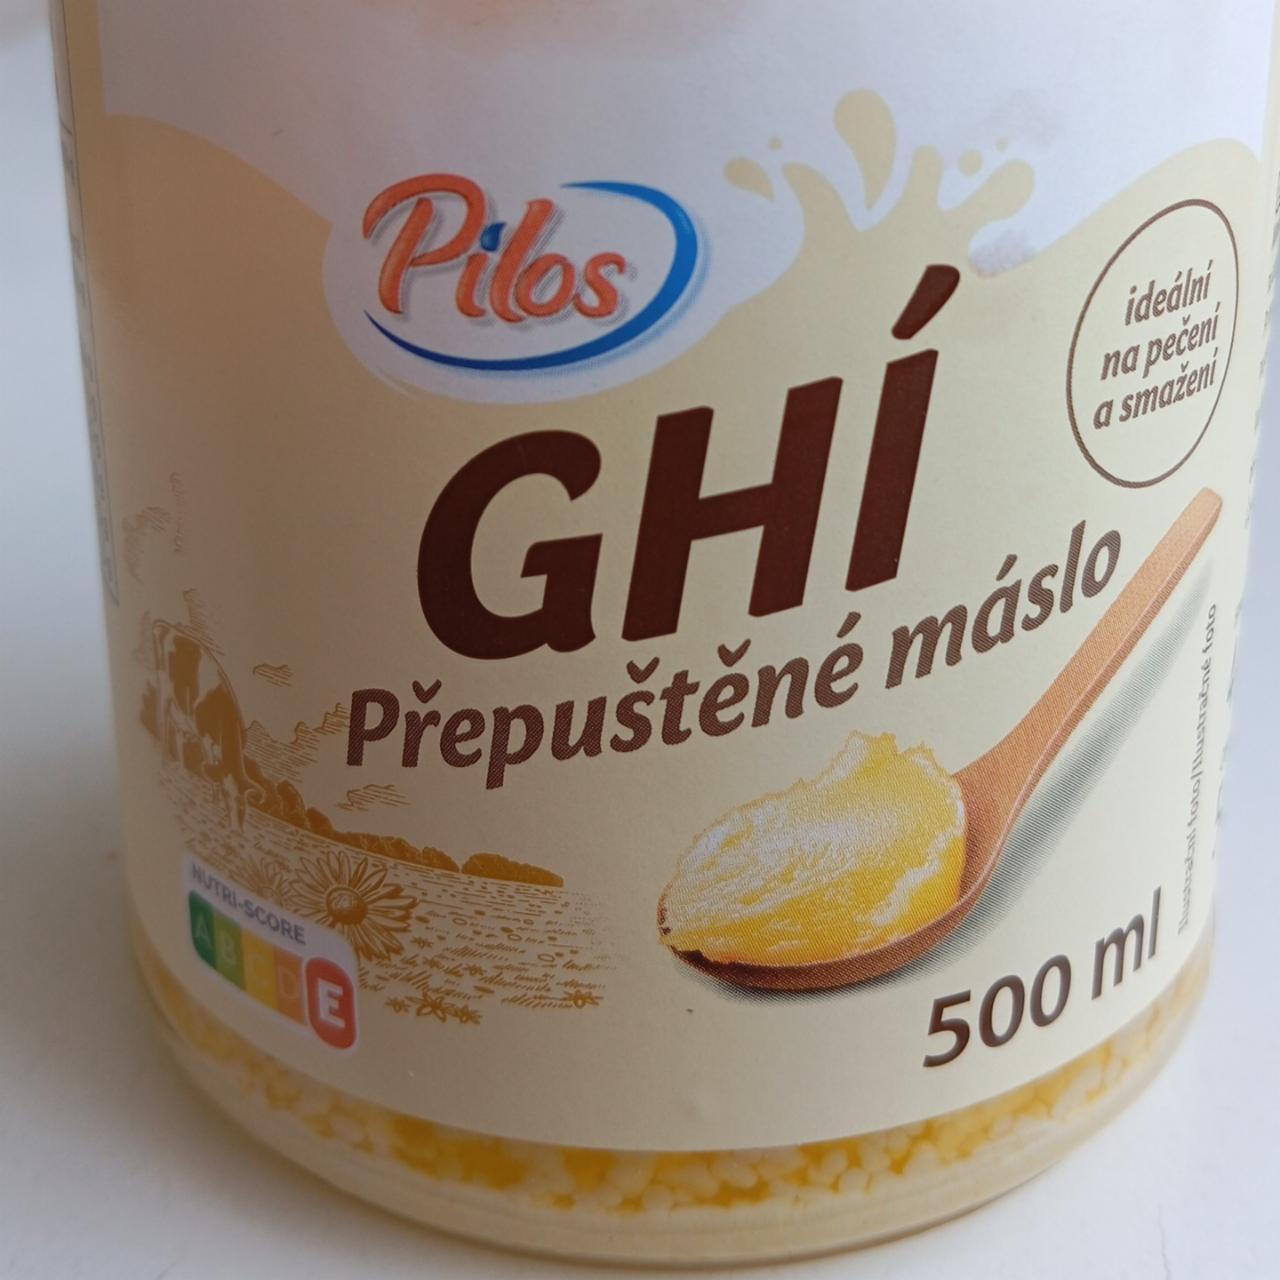 Fotografie - Ghí přepuštěné máslo Pilos